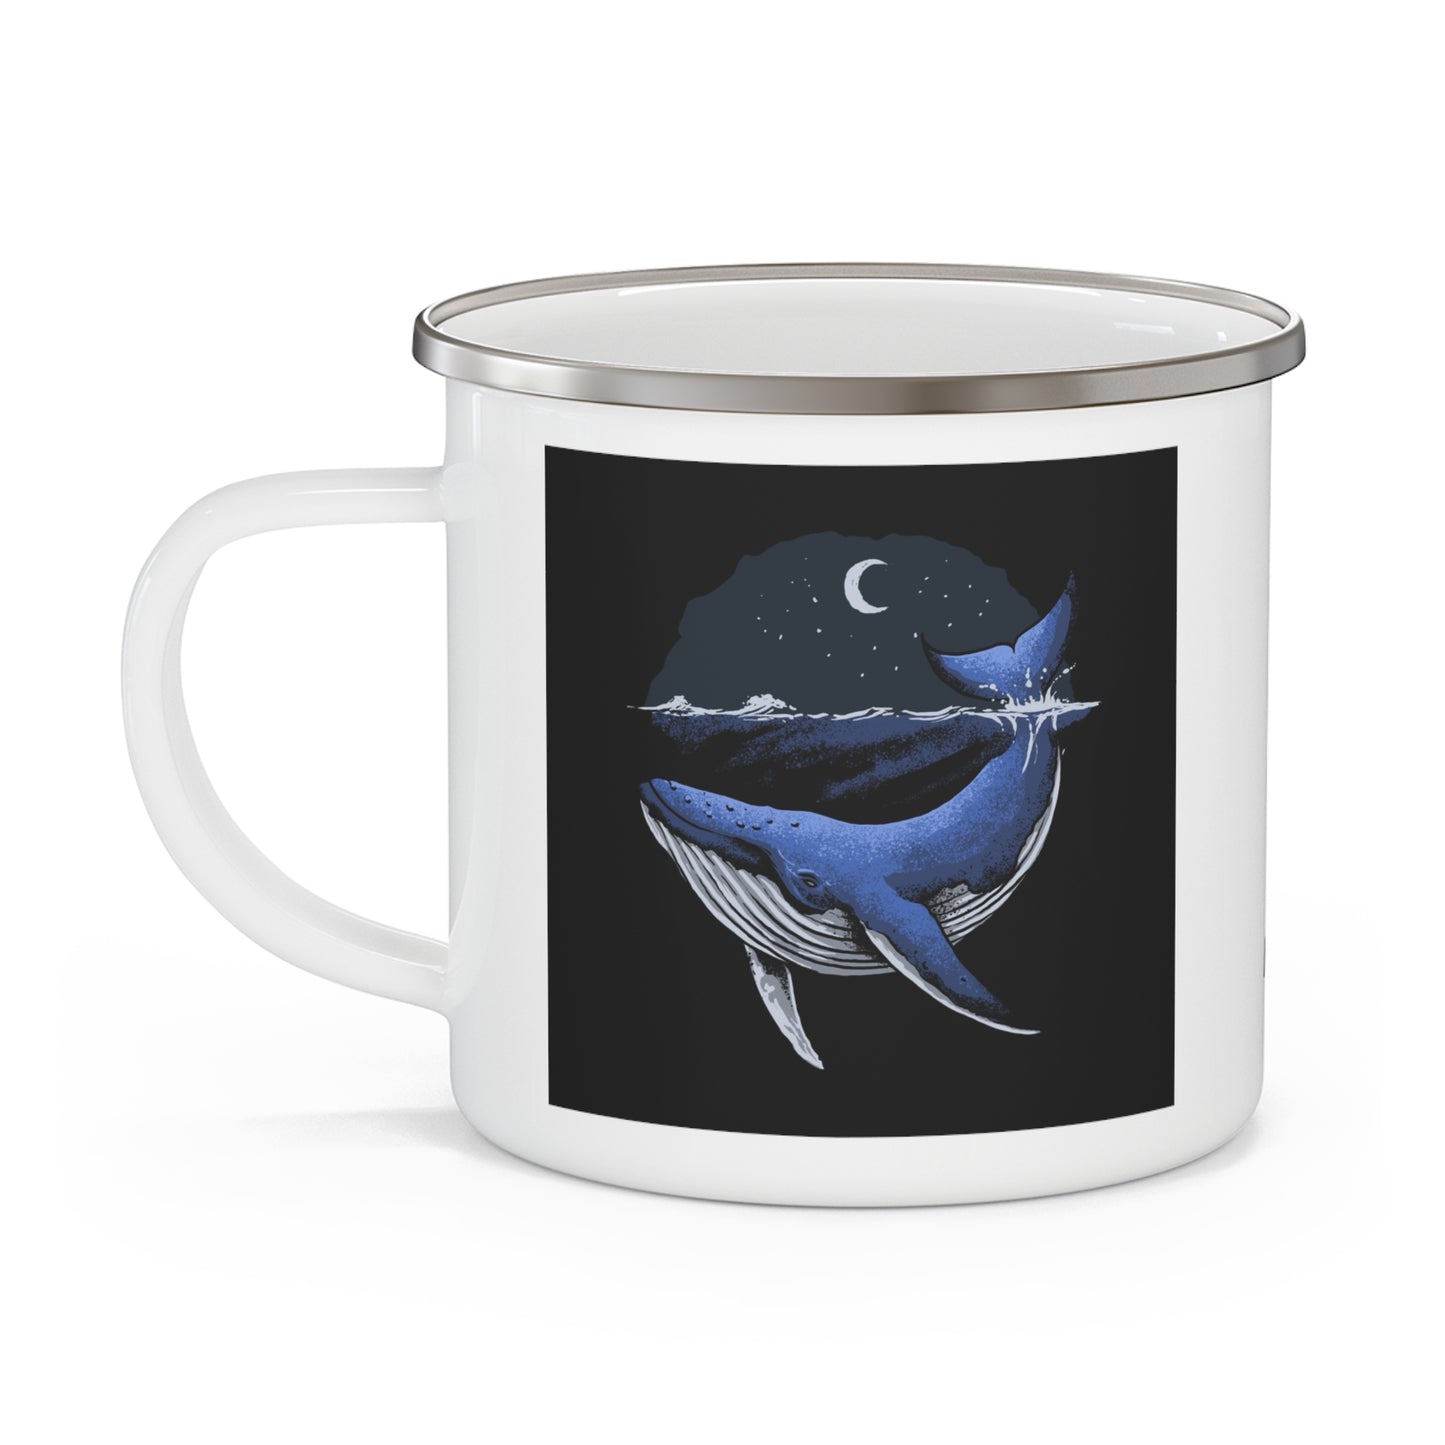 Whale at night - Enamel Camping Mug